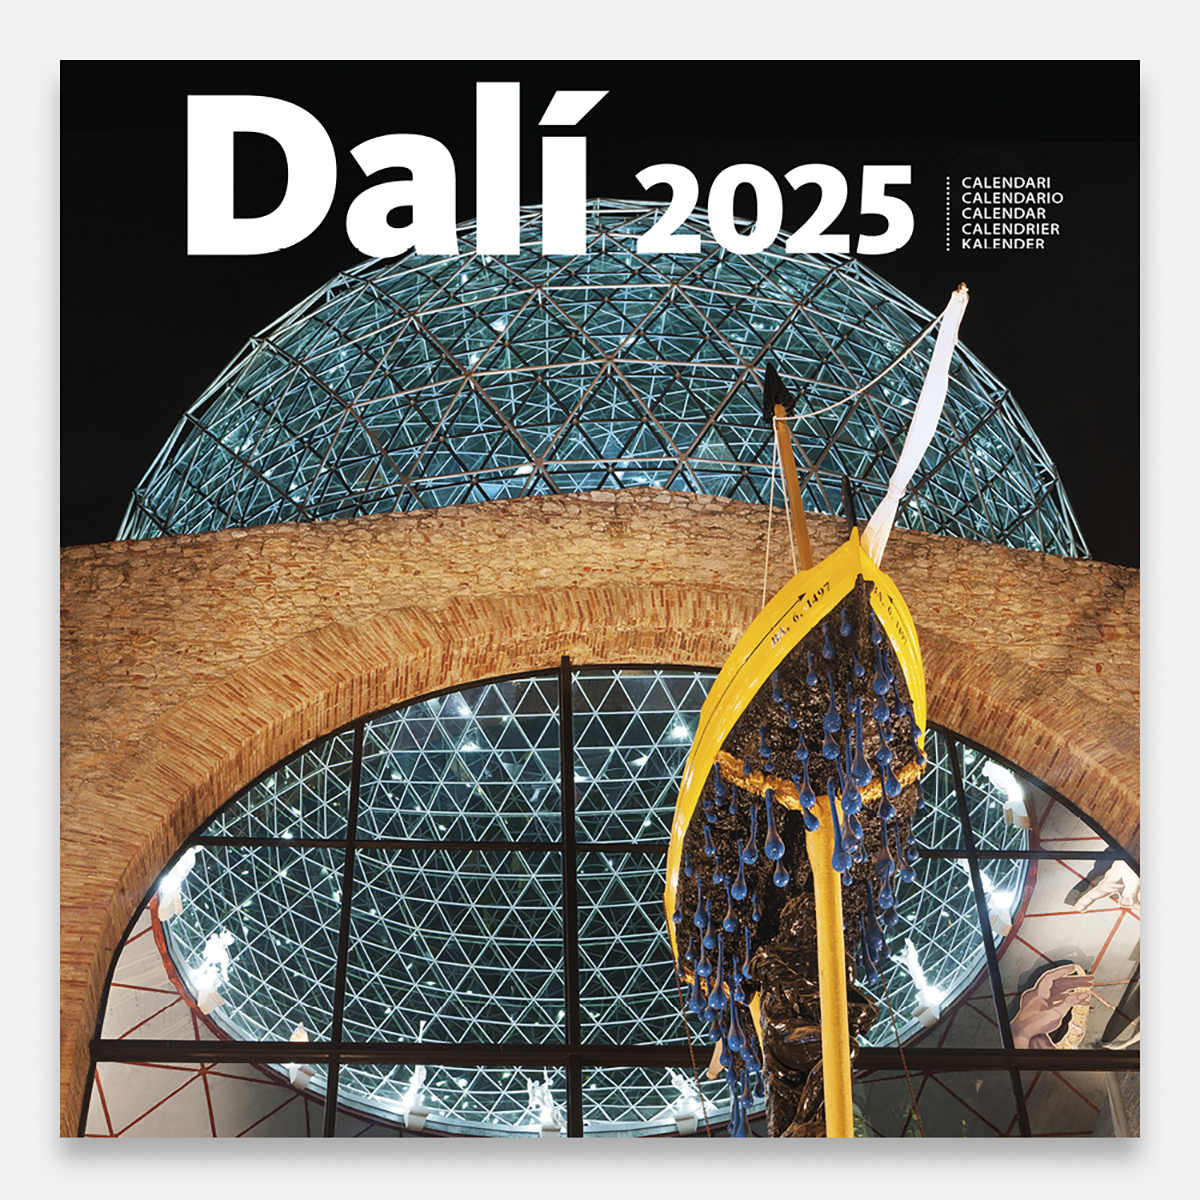 Calendrier 2025 Dalí 25dg calendario pared 2025 salvador dali